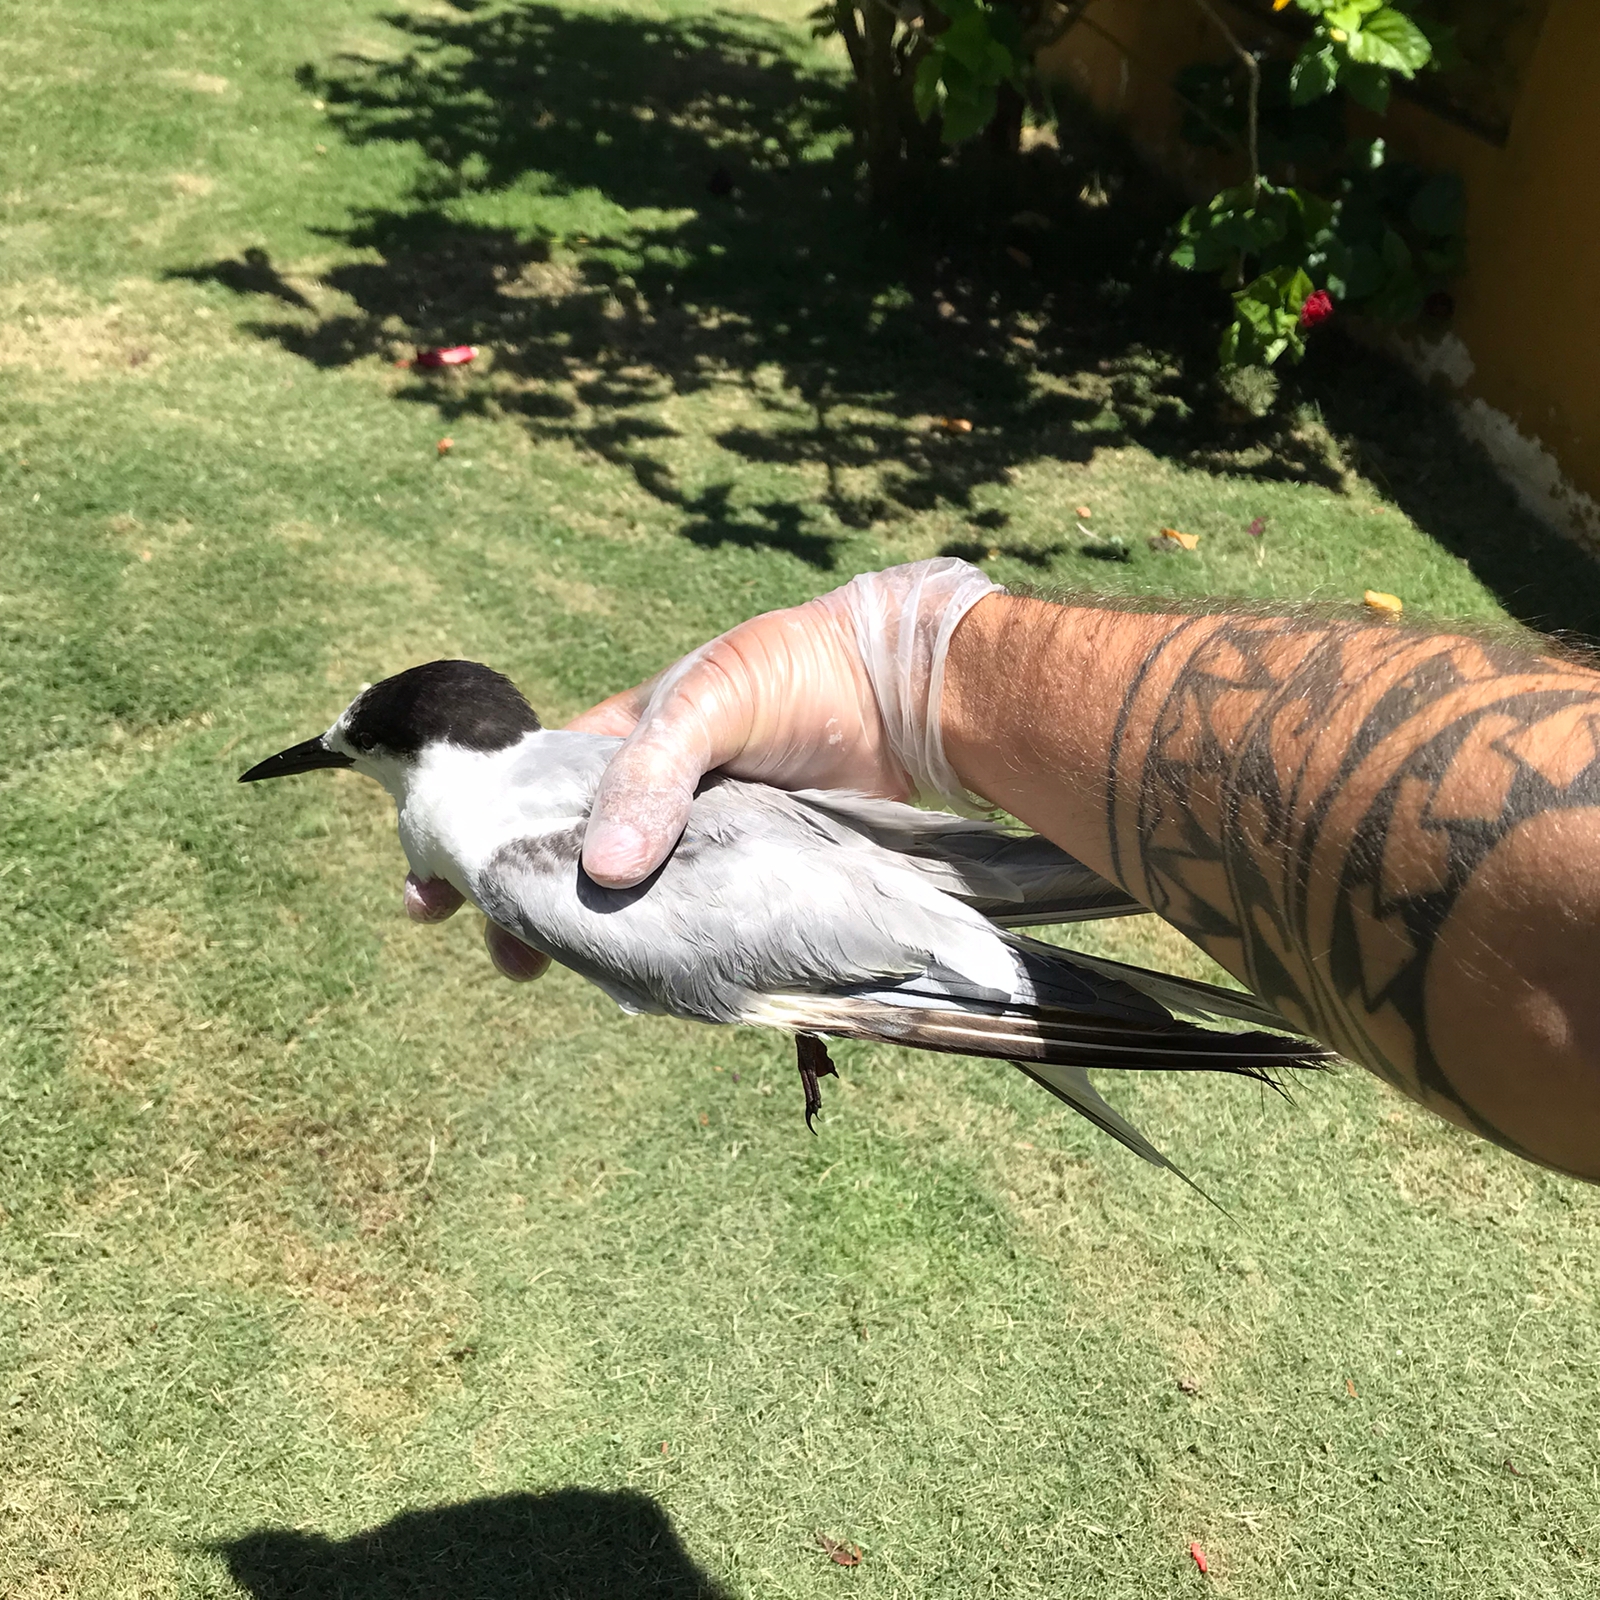 Inea socorre ave norte-americana encontrada em praia no Norte Fluminense